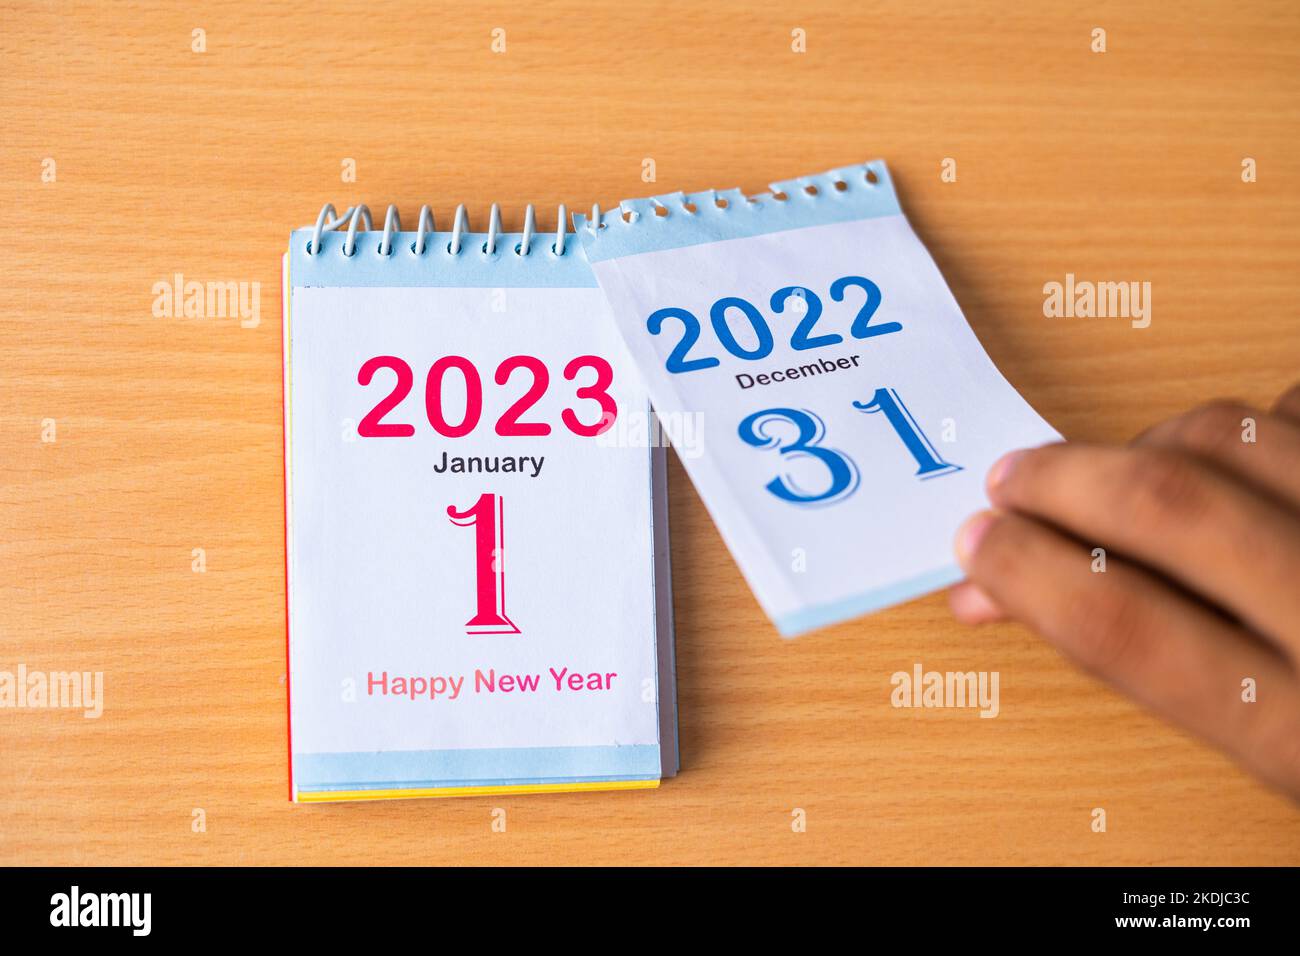 Gros plan sur le changement des mains du calendrier à la nouvelle année 2023 en supprimant 2022 - concept de nouveaux débuts Banque D'Images